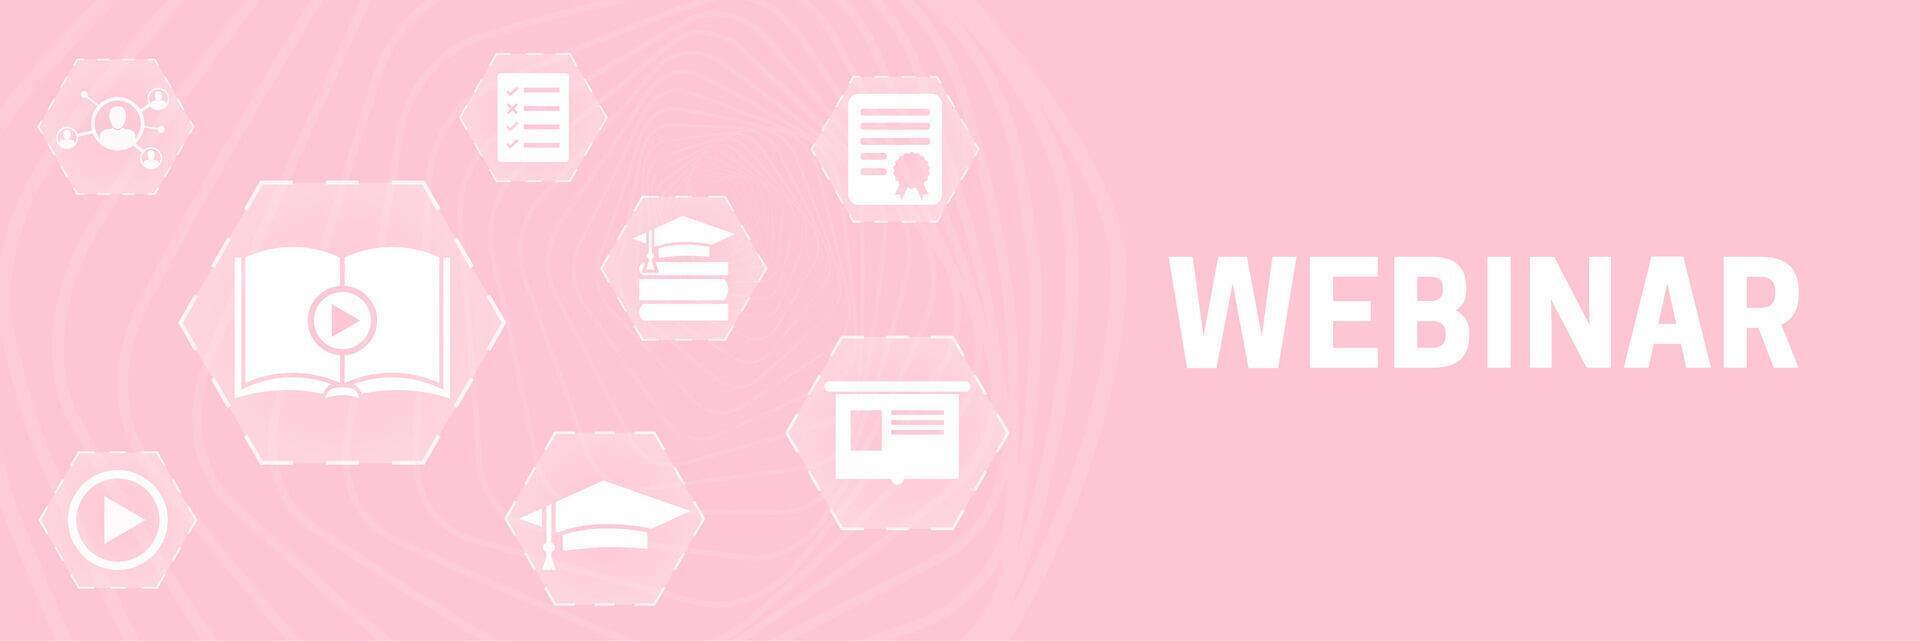 rosa webinar uppkopplad inlärning baner bakgrund med ikoner för kvinna seminarium vektor